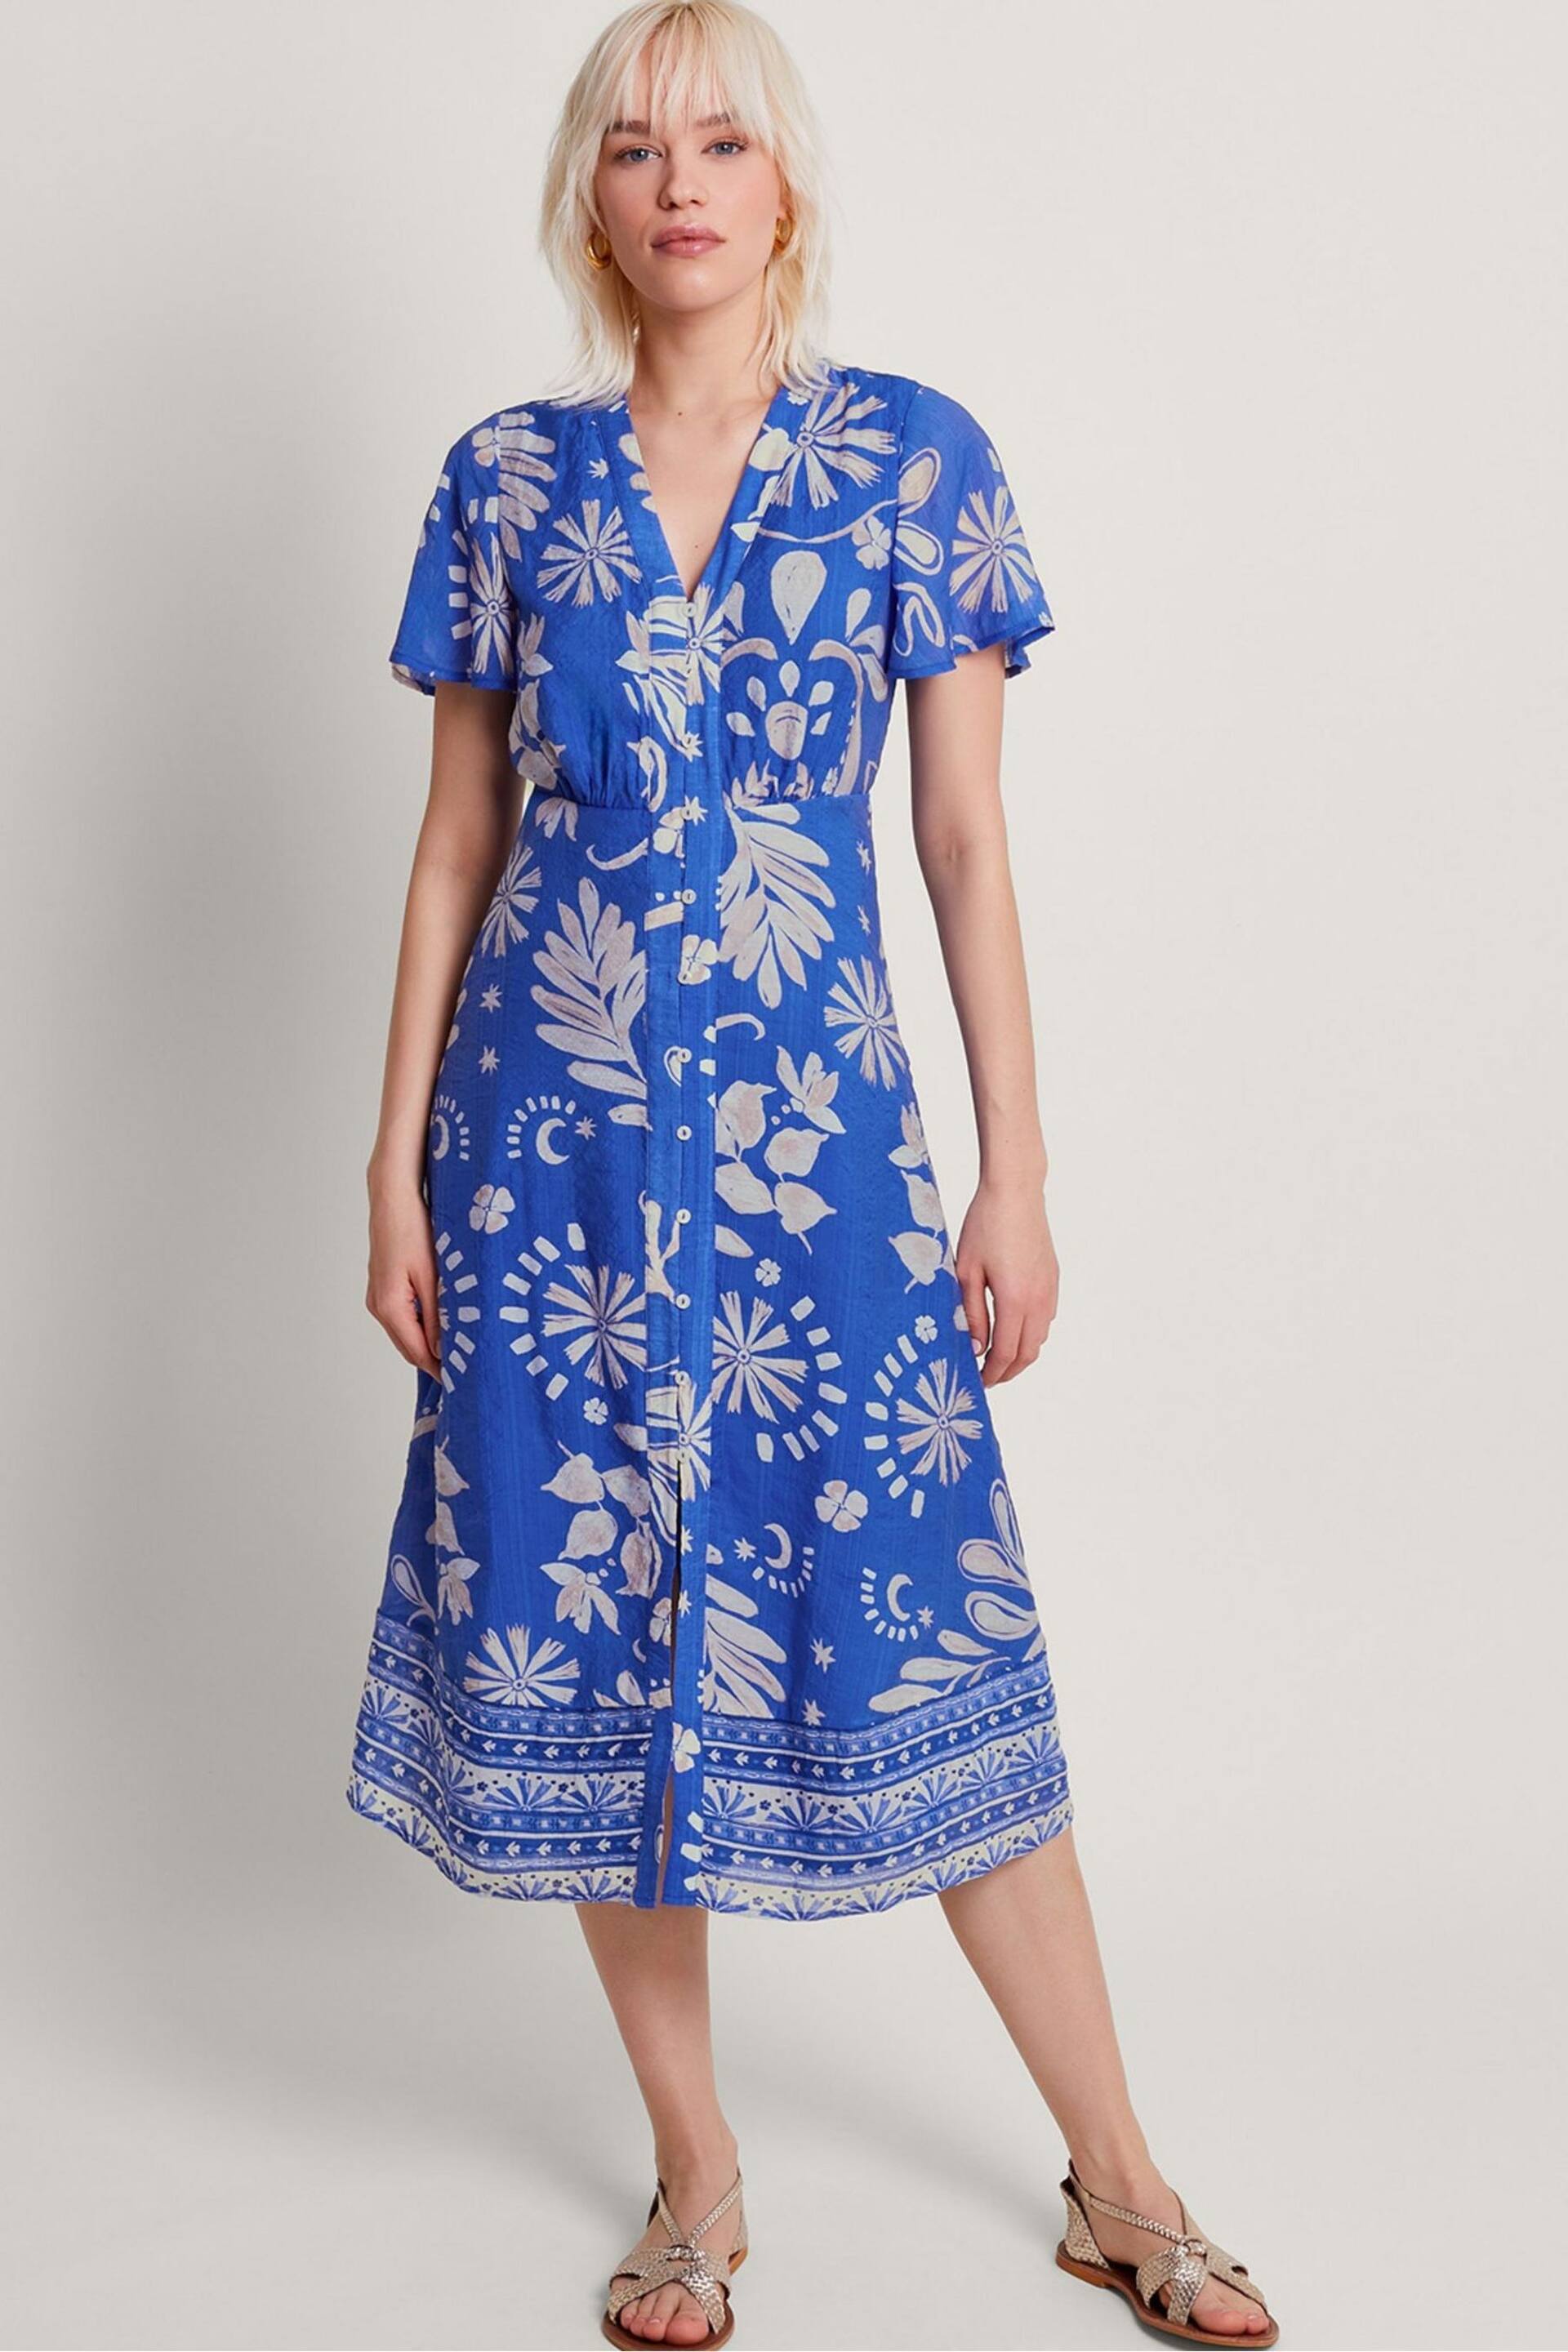 Monsoon Blue Cleo Tea Dress - Image 2 of 5